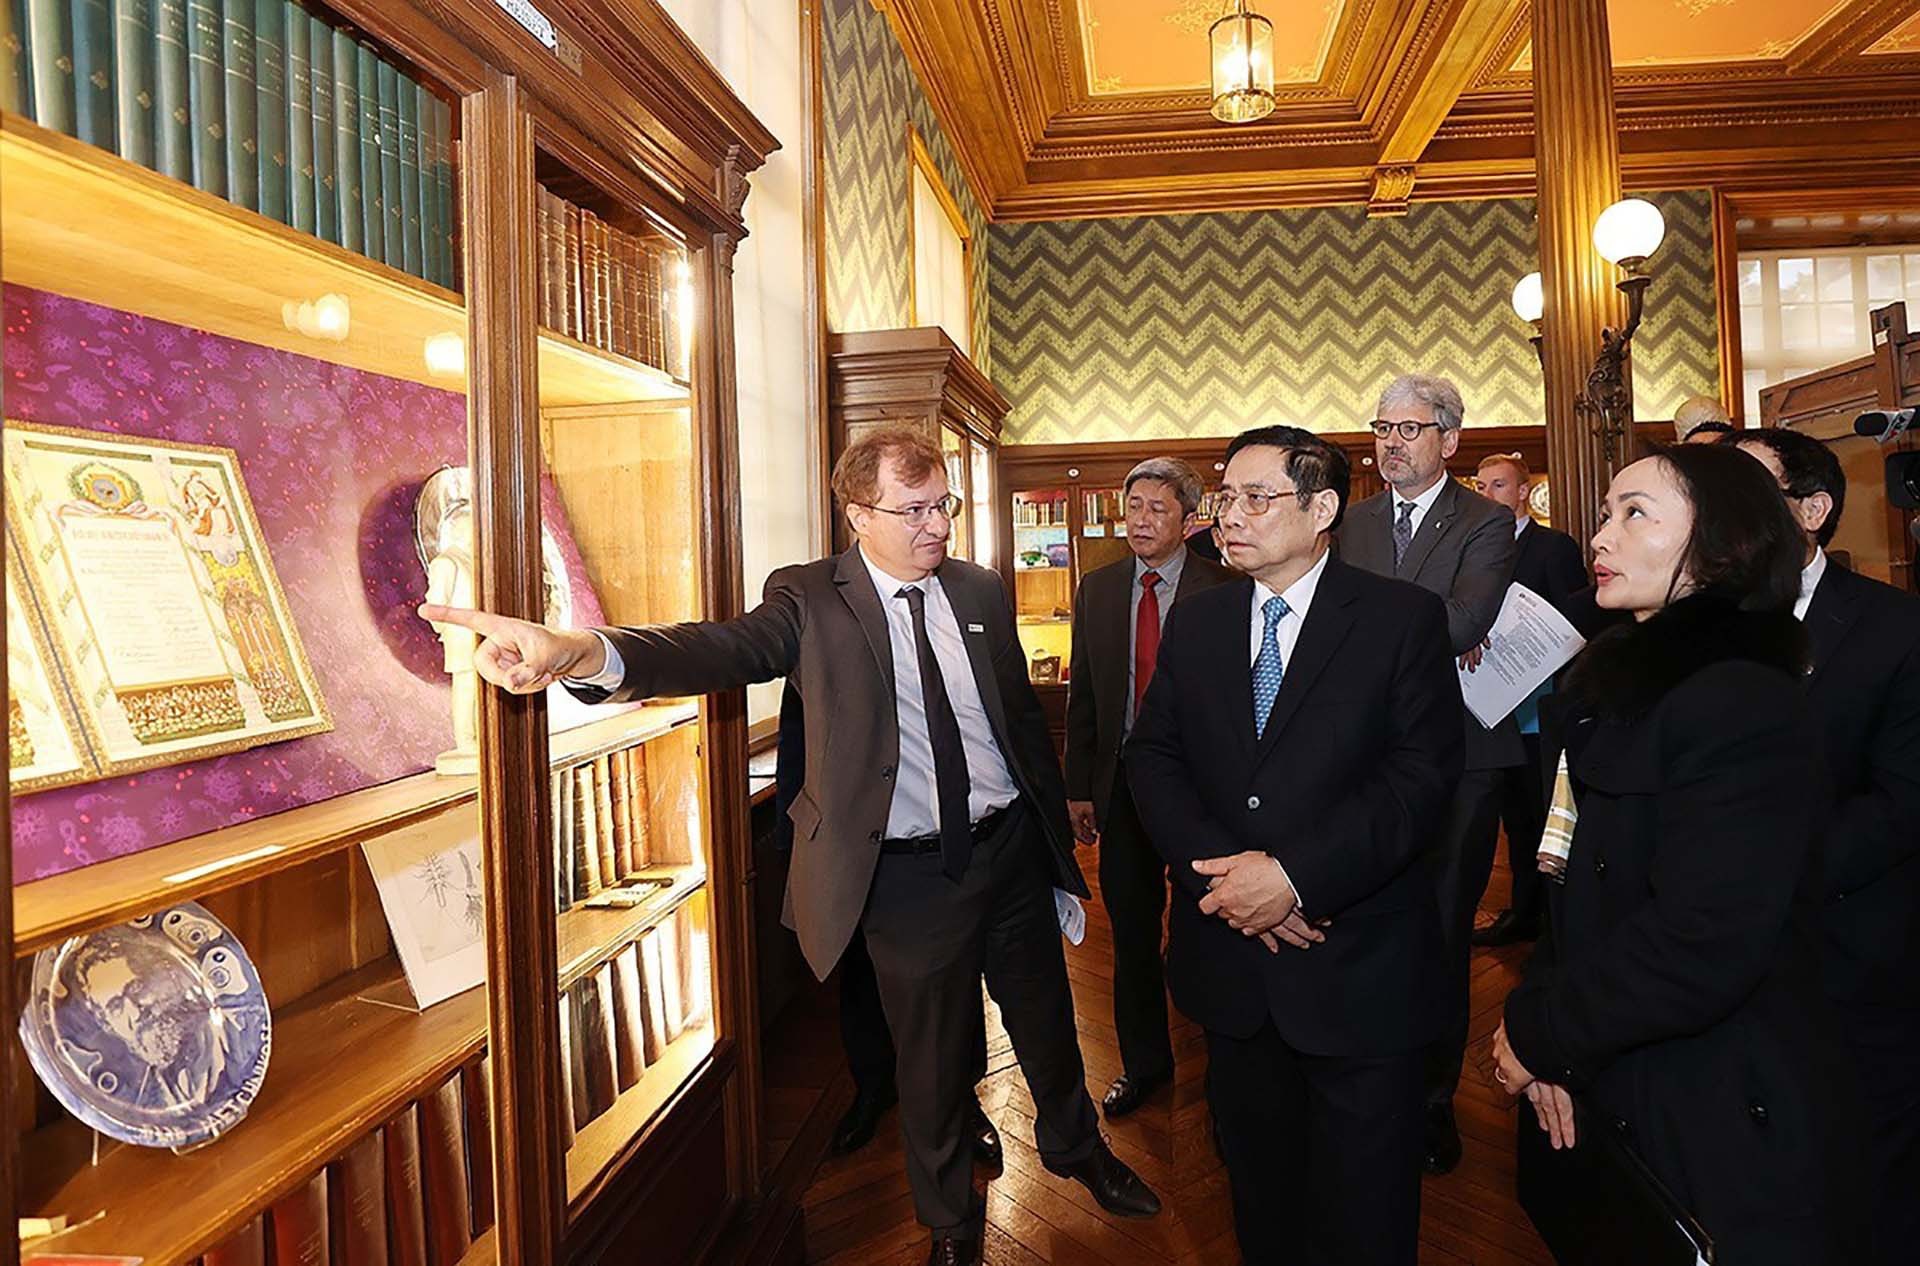 Thủ tướng Phạm Minh Chính cho biết Viện Pasteur Paris là một địa chỉ mà Thủ tướng chọn đến trong chuyến thăm chính thức Pháp lần này, vì đây là một trong những cơ quan có mối quan hệ chặt chẽ với các Viện Pasteur của Việt Nam, tiêu biểu cho mối quan hệ củ